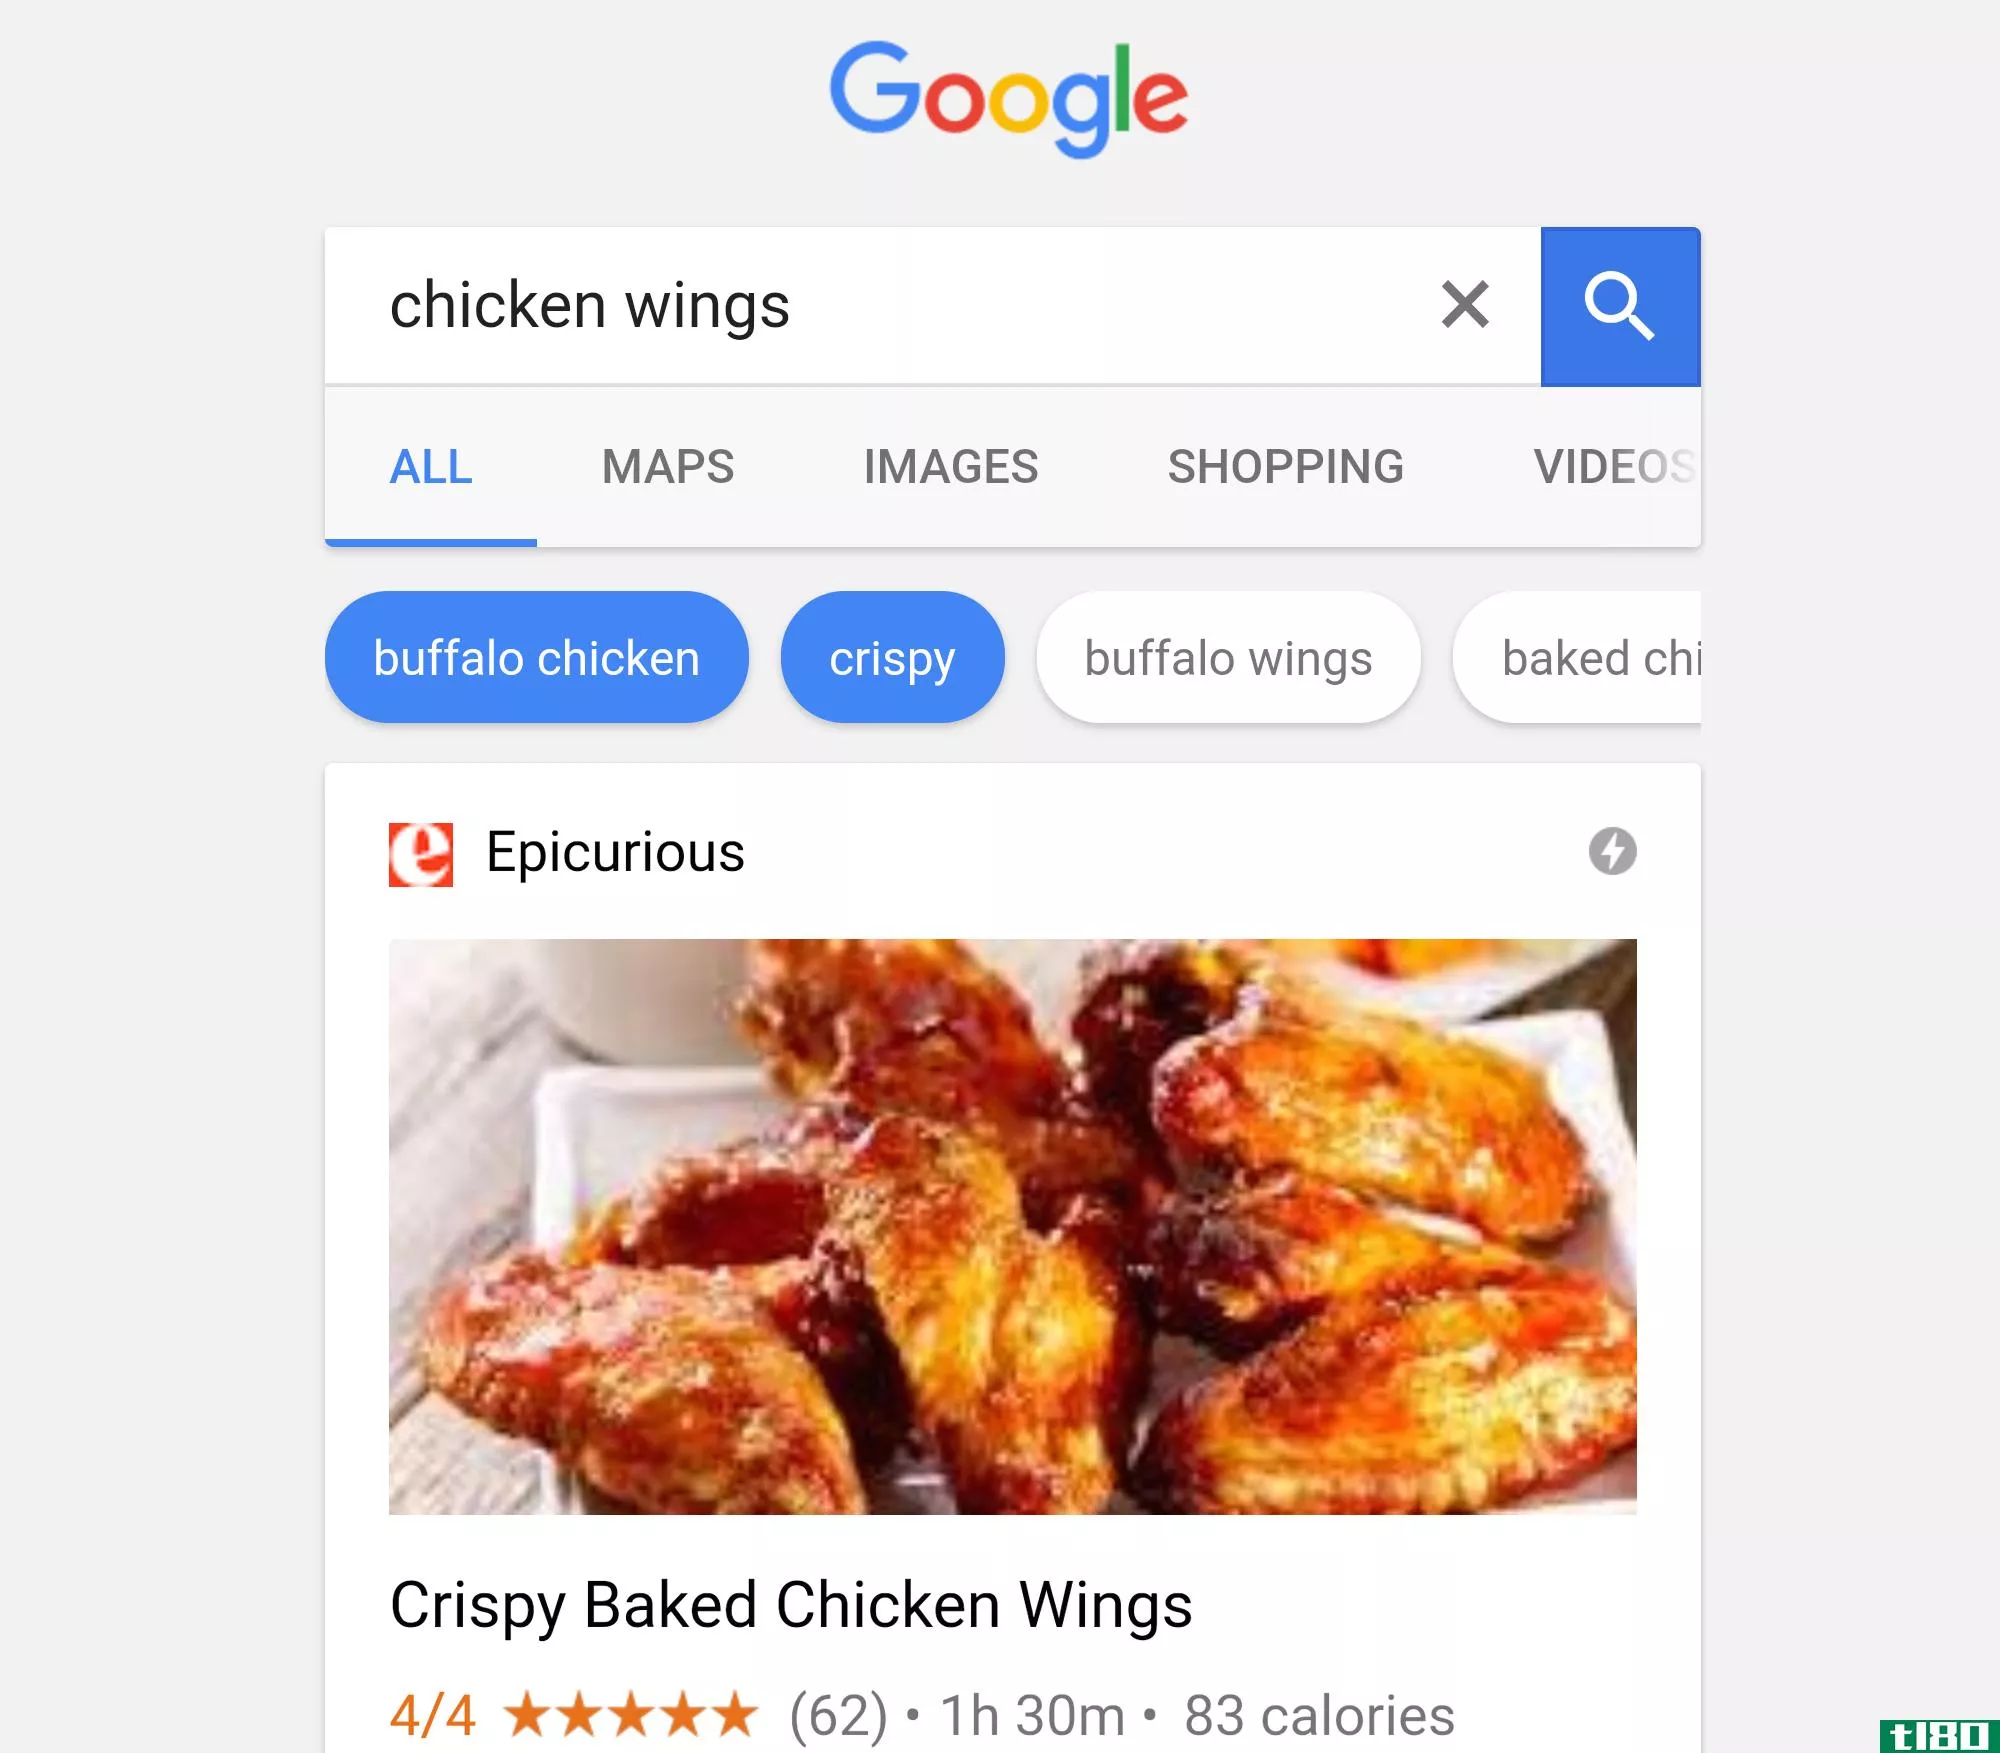 谷歌可以让你指定配方搜索与建议的口味和成分